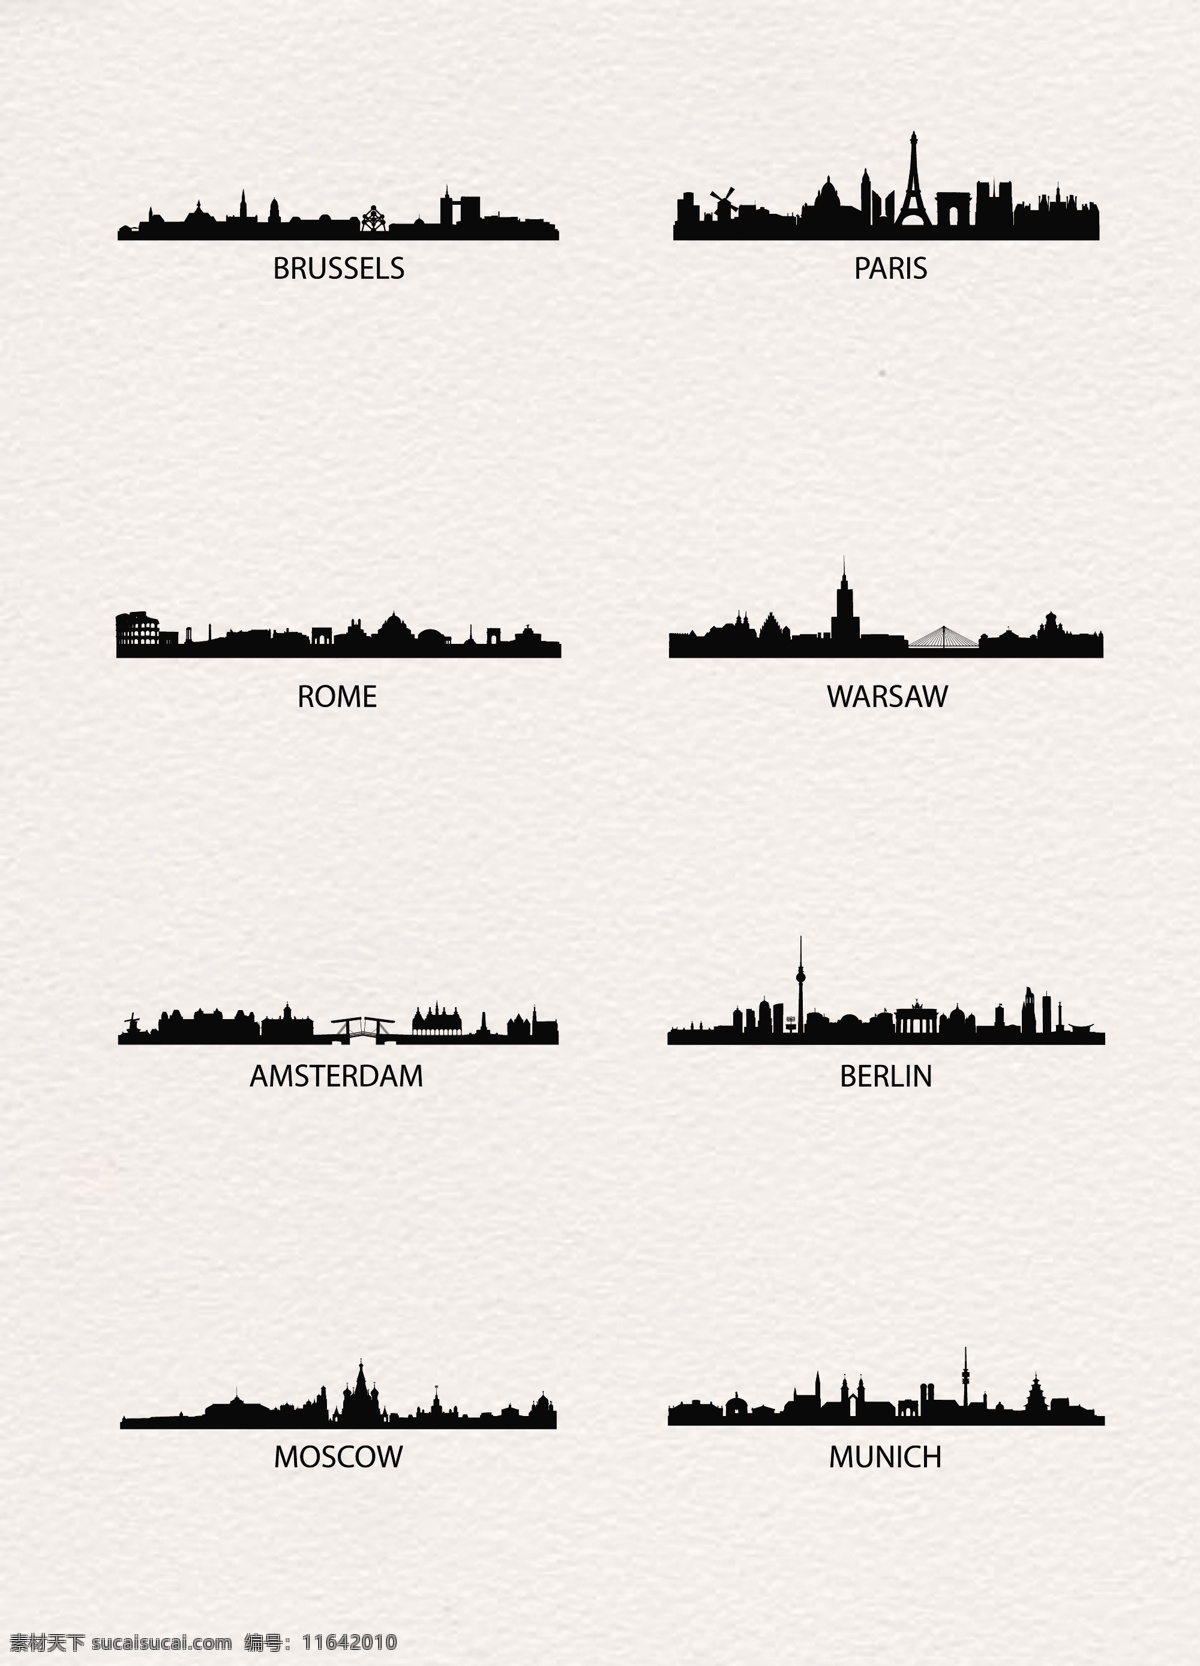 创意 城市 剪影 扁平化 矢量图 黑色 简洁 城市剪影 巴黎 布鲁塞尔 罗马 沃斯瓦 阿姆斯特丹 柏林 莫斯科 慕尼黑